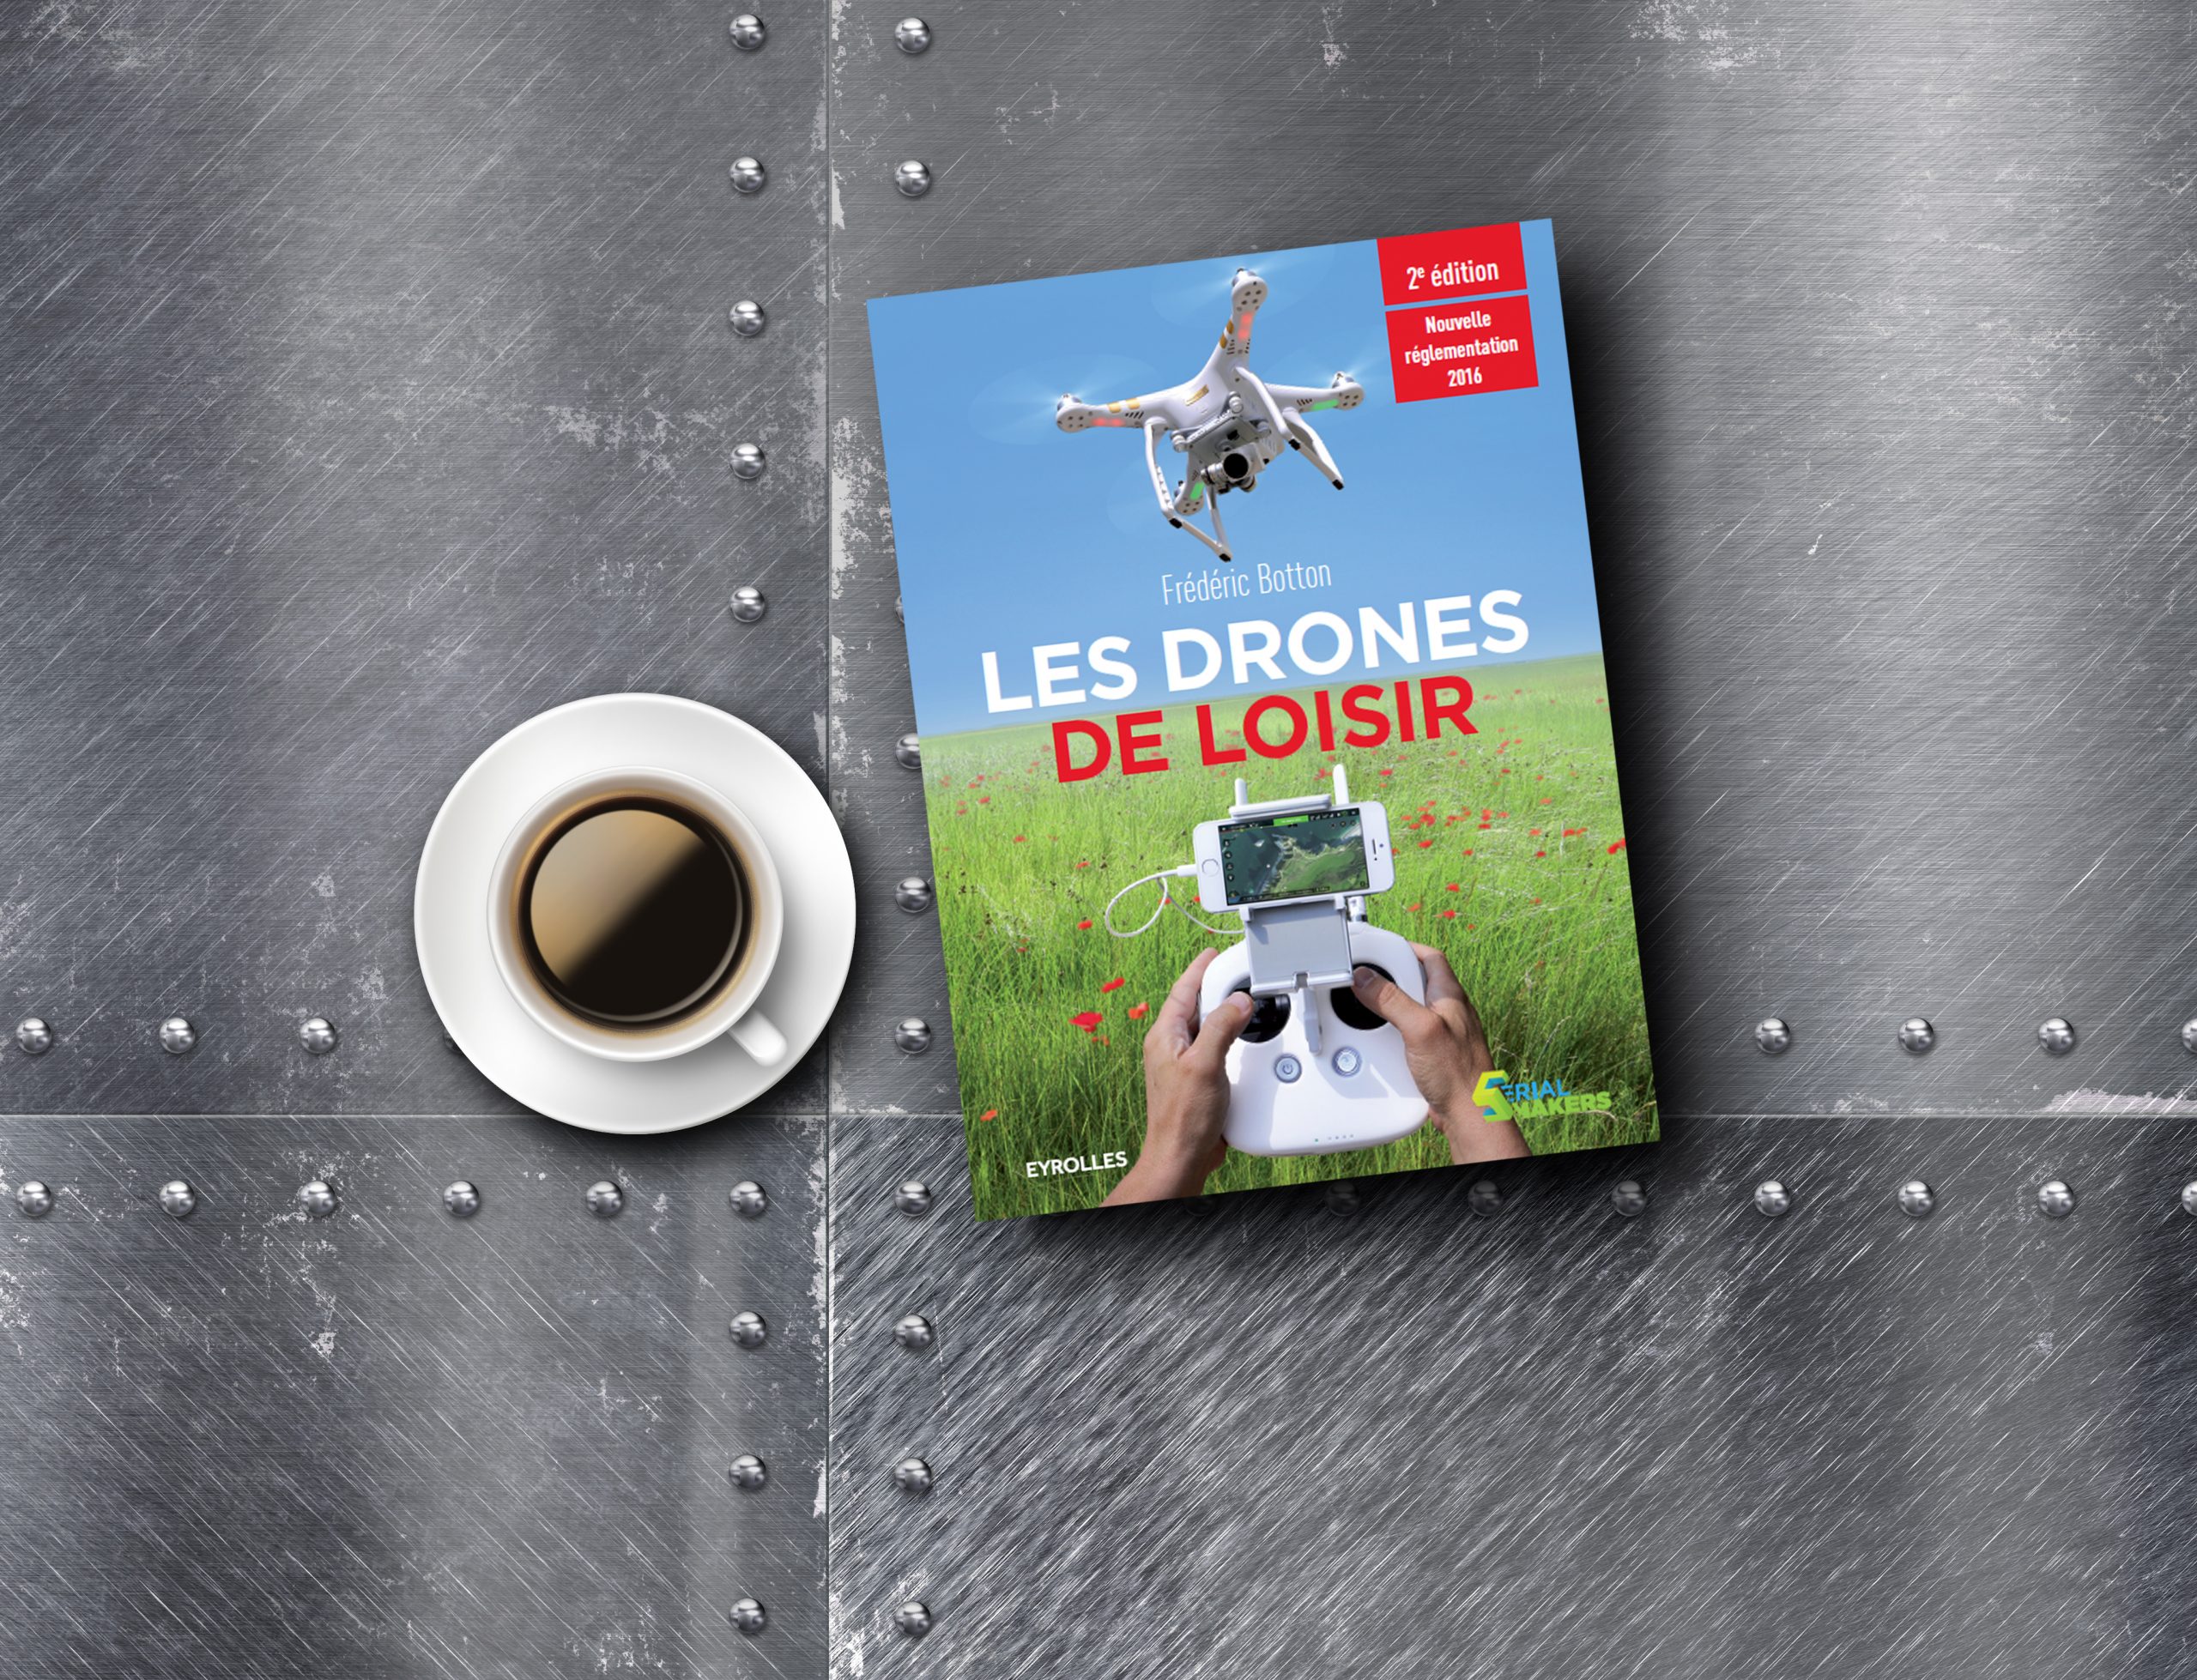 Les drones de loisir, V2 !